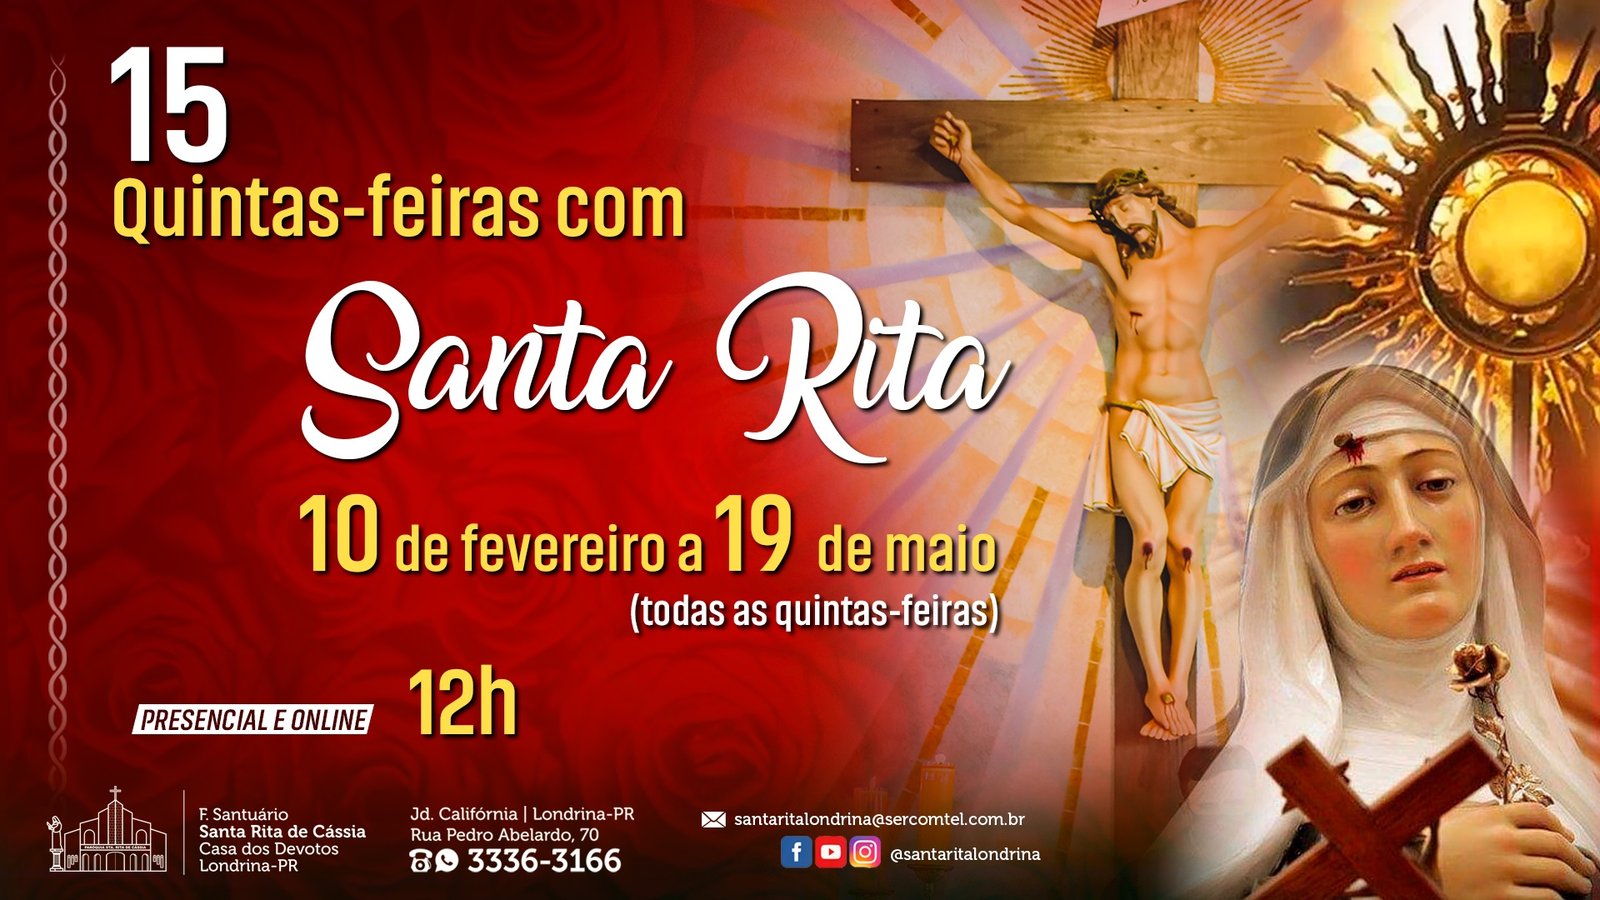 15 Quintas-feiras com Santa Rita de Cássia